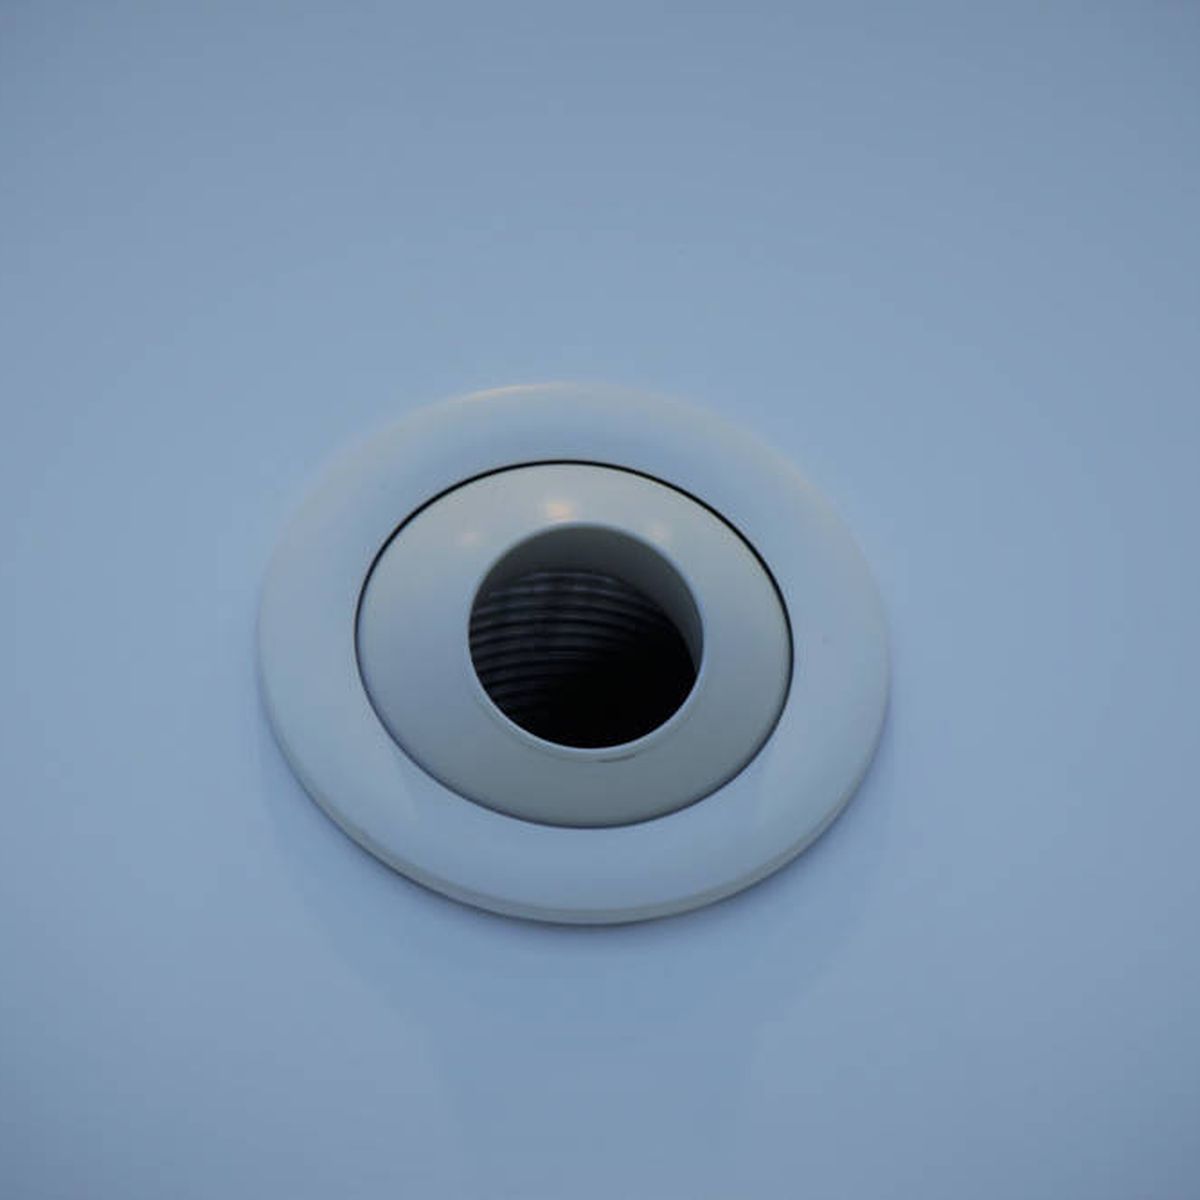 Cámara espía cámara oculta para niñera, mini cámara 4K Ultra HD con cámara  WiFi inalámbrica, seguridad portátil para el hogar interior y exterior